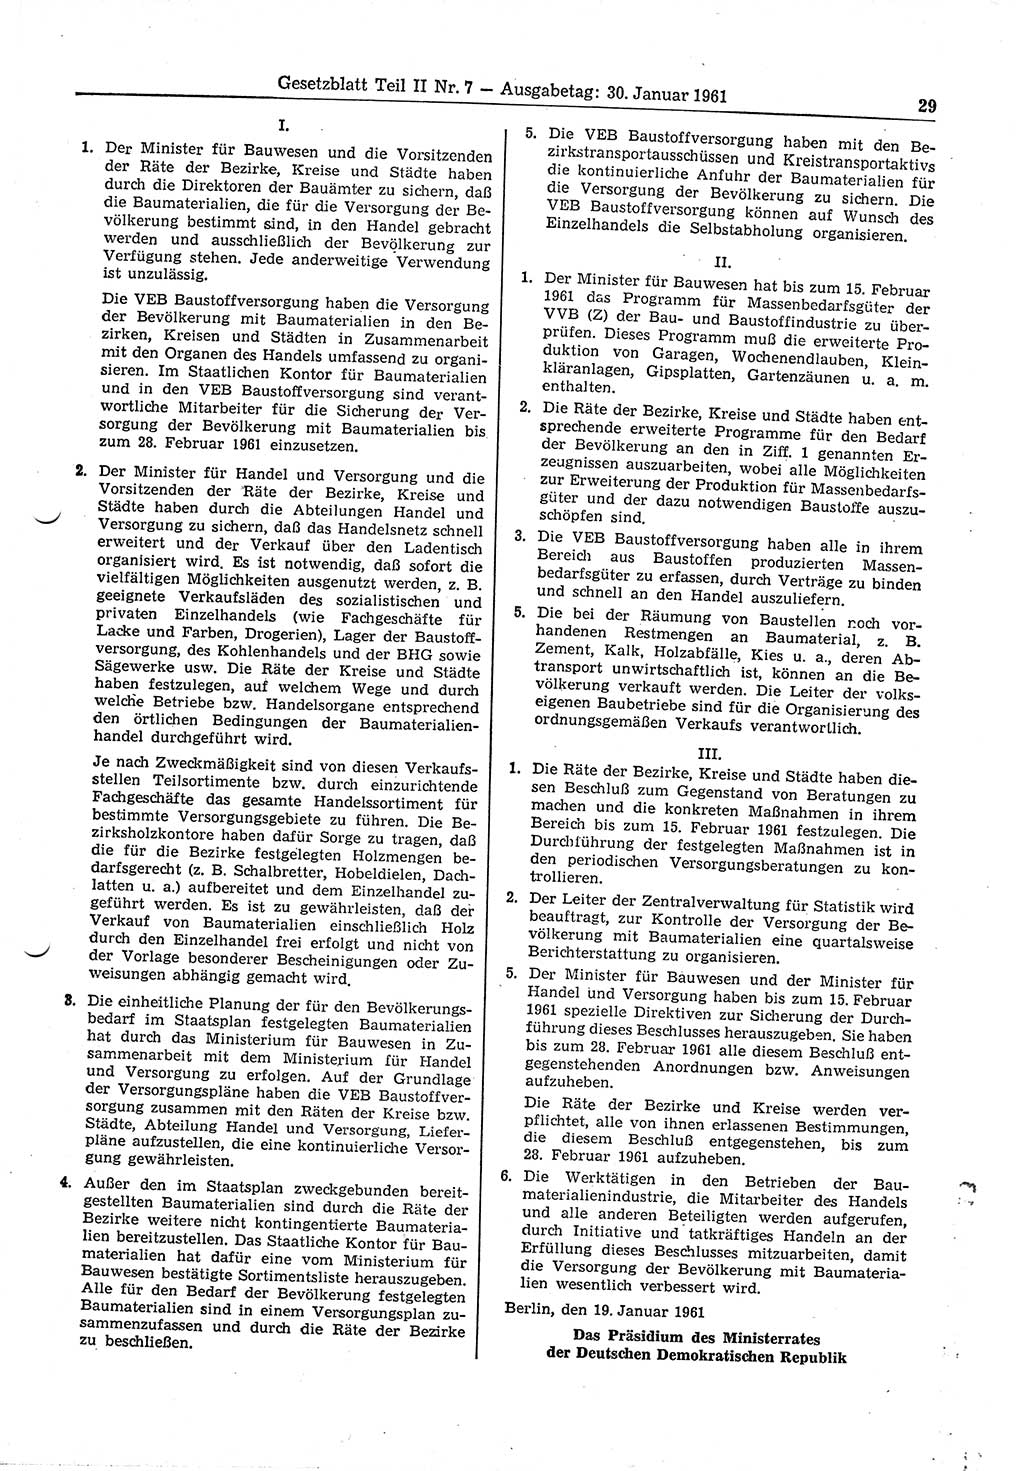 Gesetzblatt (GBl.) der Deutschen Demokratischen Republik (DDR) Teil ⅠⅠ 1961, Seite 29 (GBl. DDR ⅠⅠ 1961, S. 29)